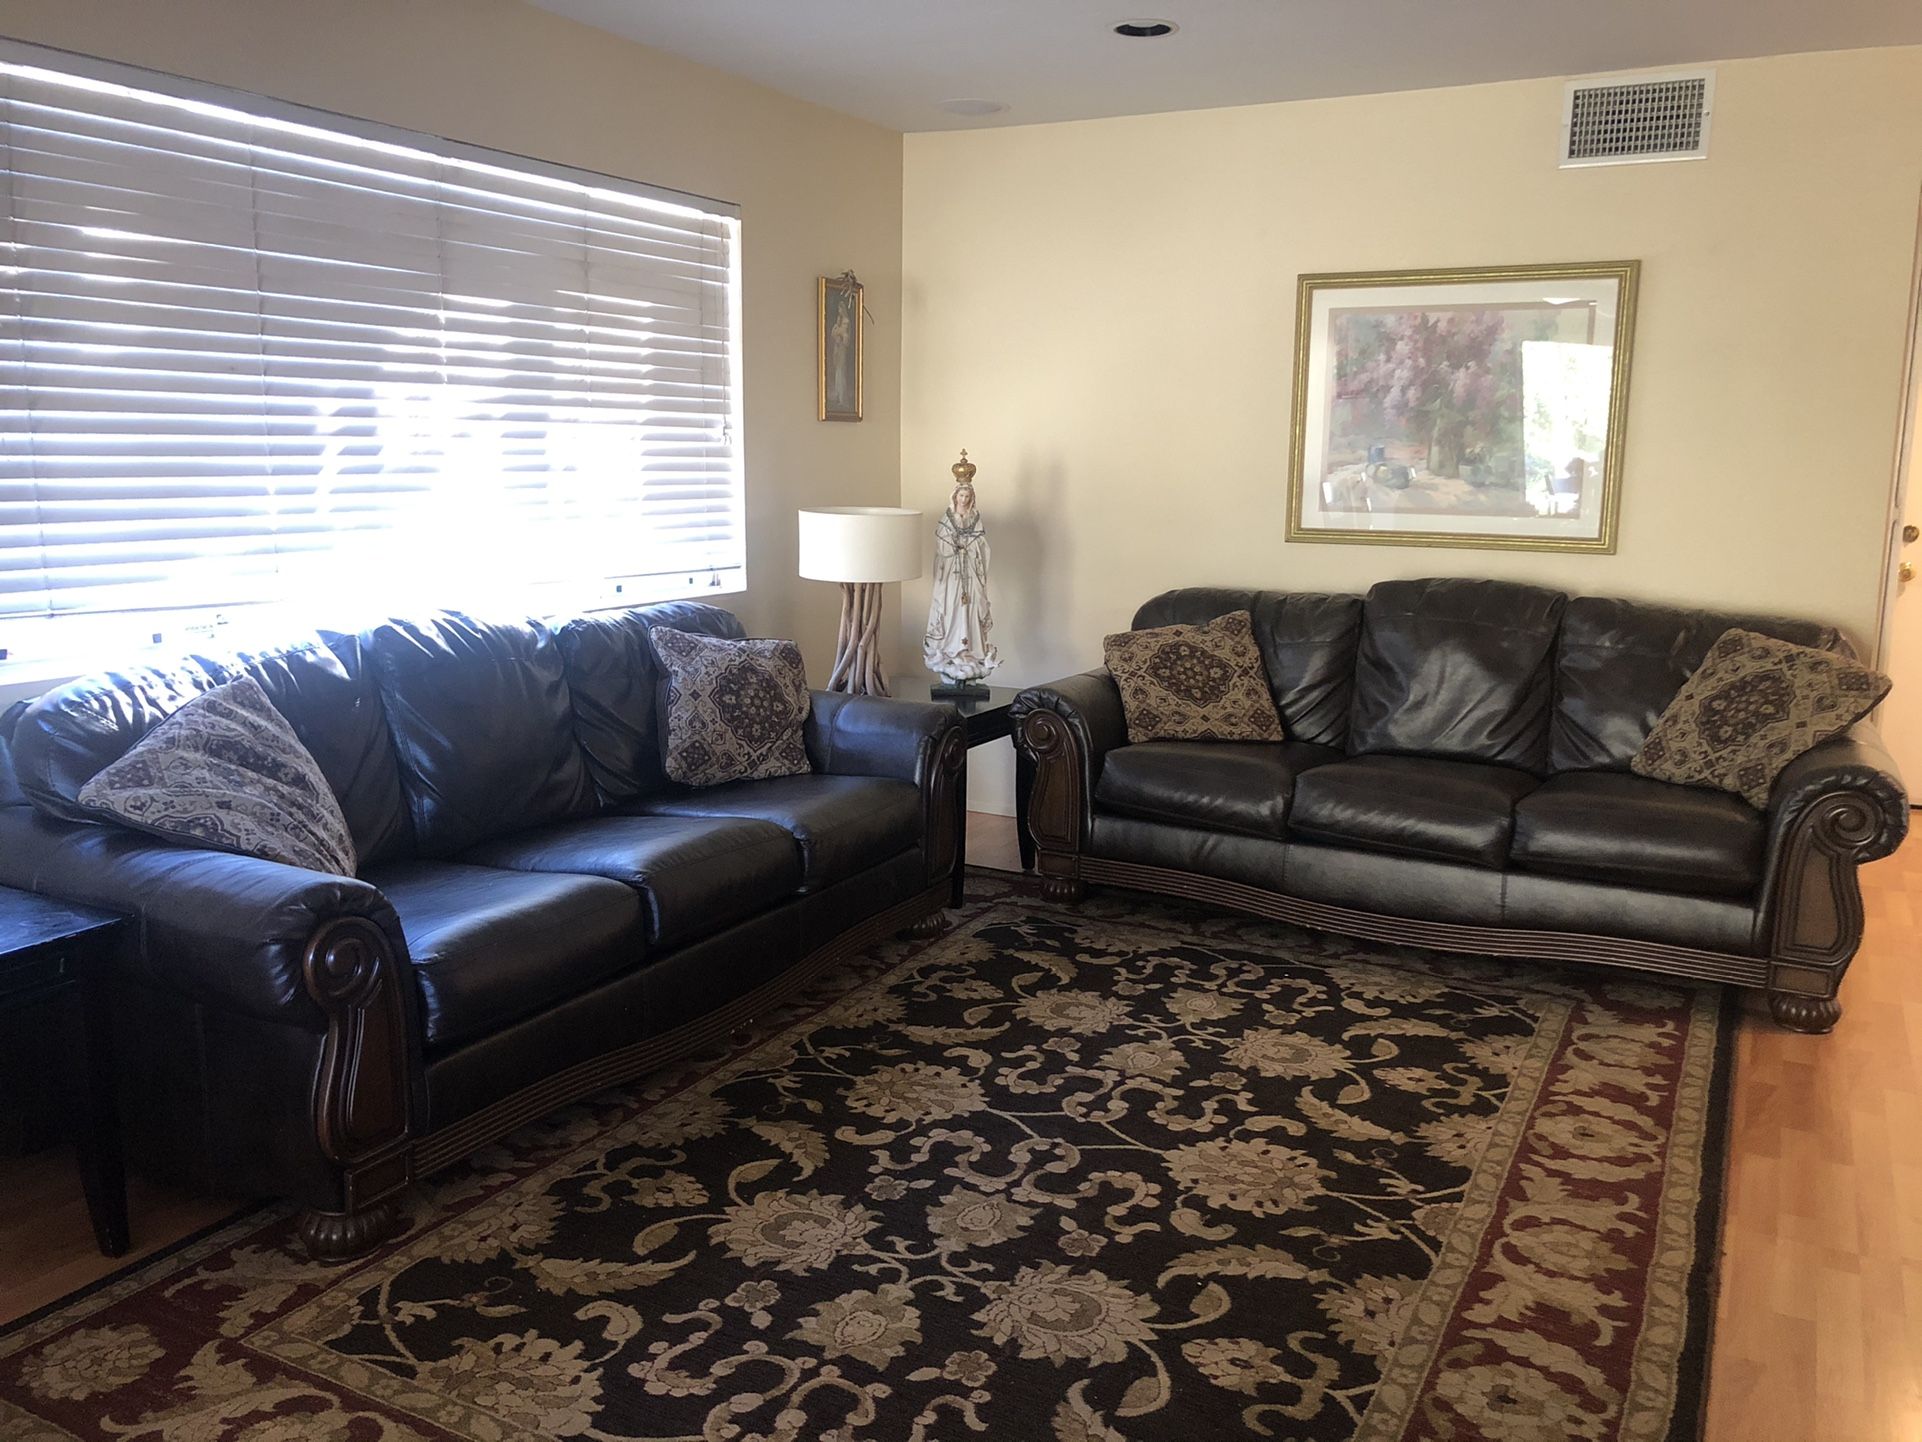 2 Living Room Sofas